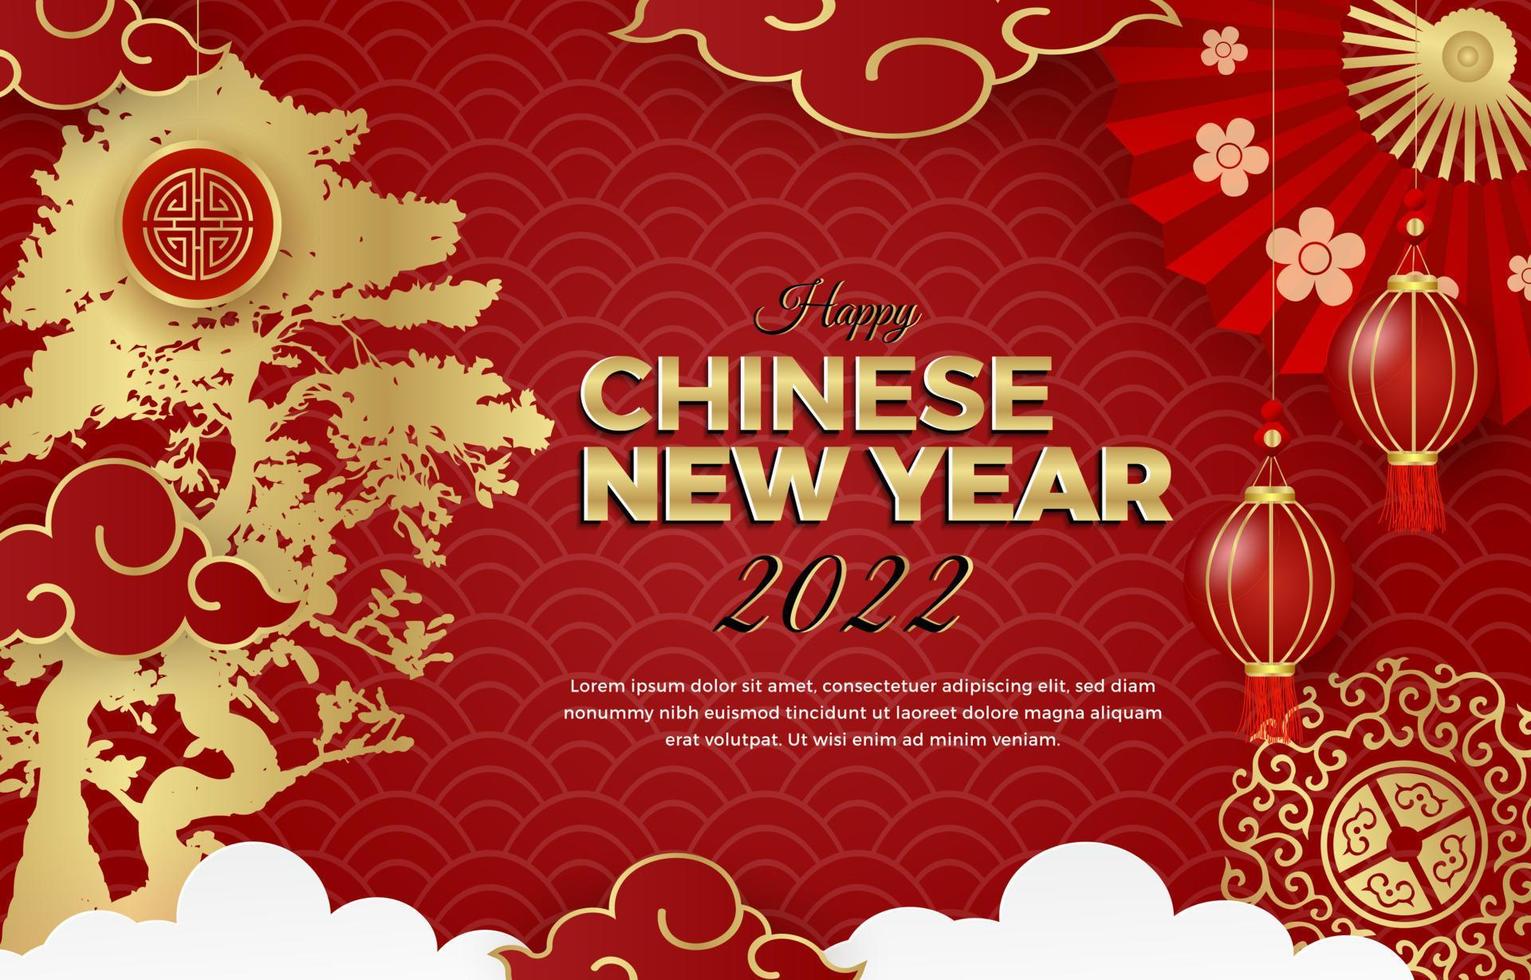 feliz ano novo chinês 2022 design de cartaz, panfleto, cartão de saudação vetor